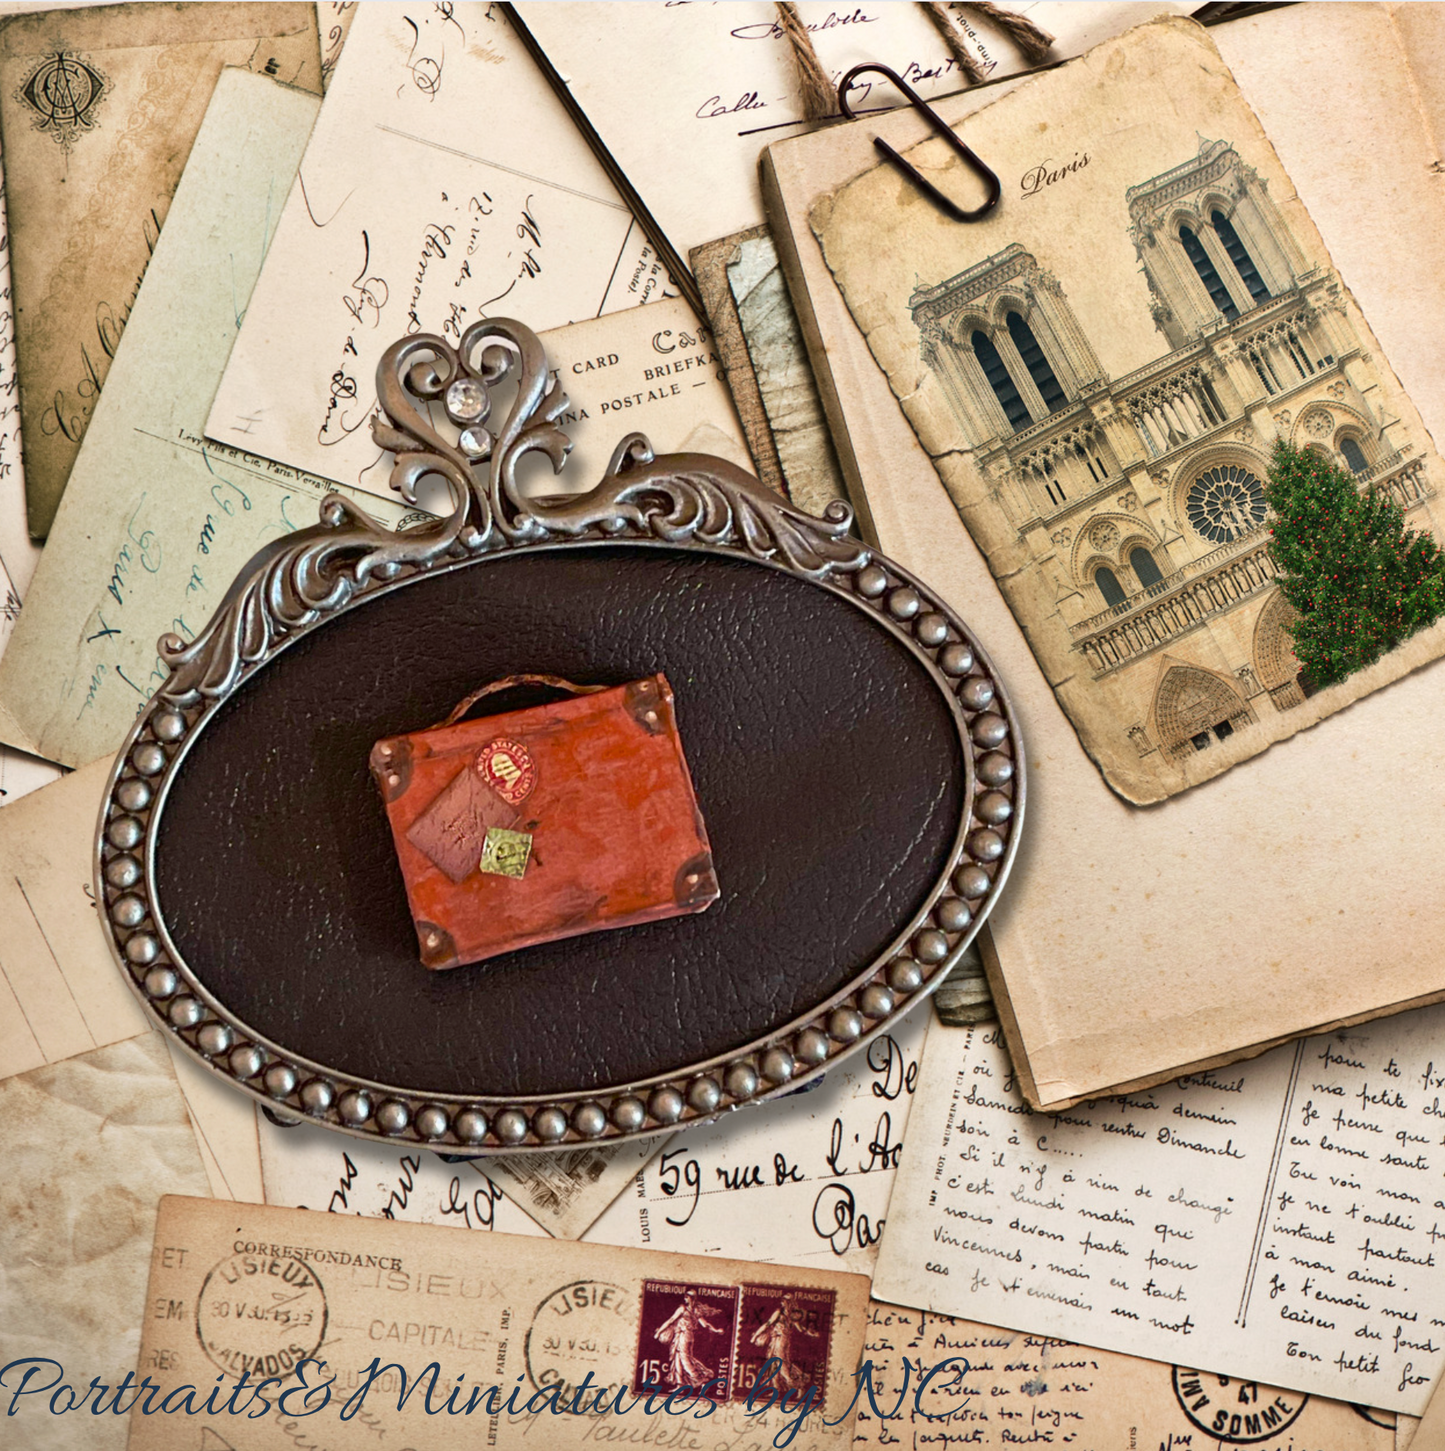 Miniature Briefcase